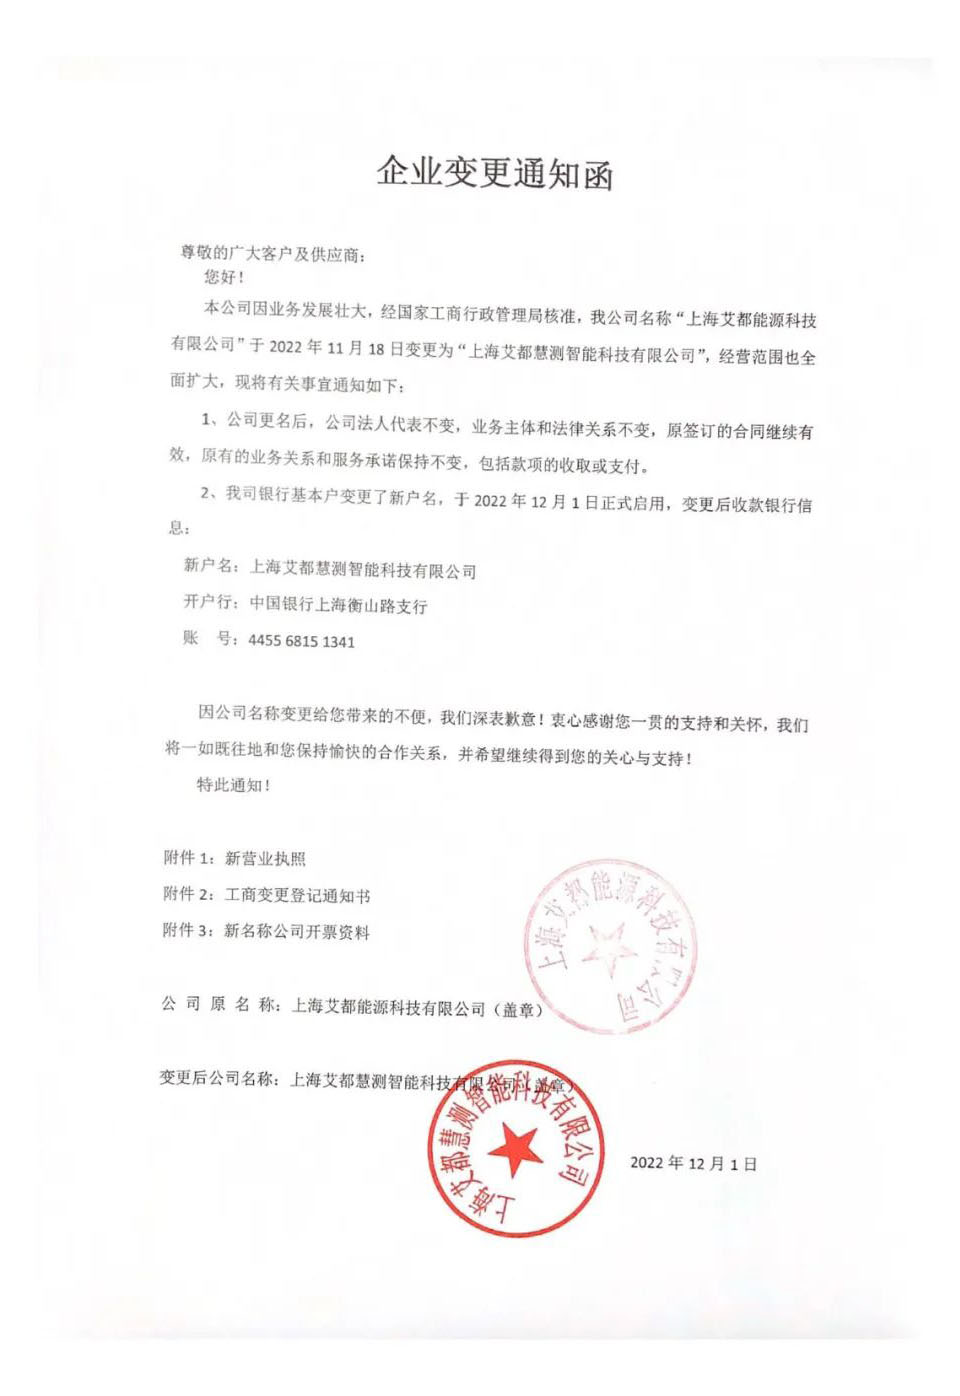 上海艾都更名通知函